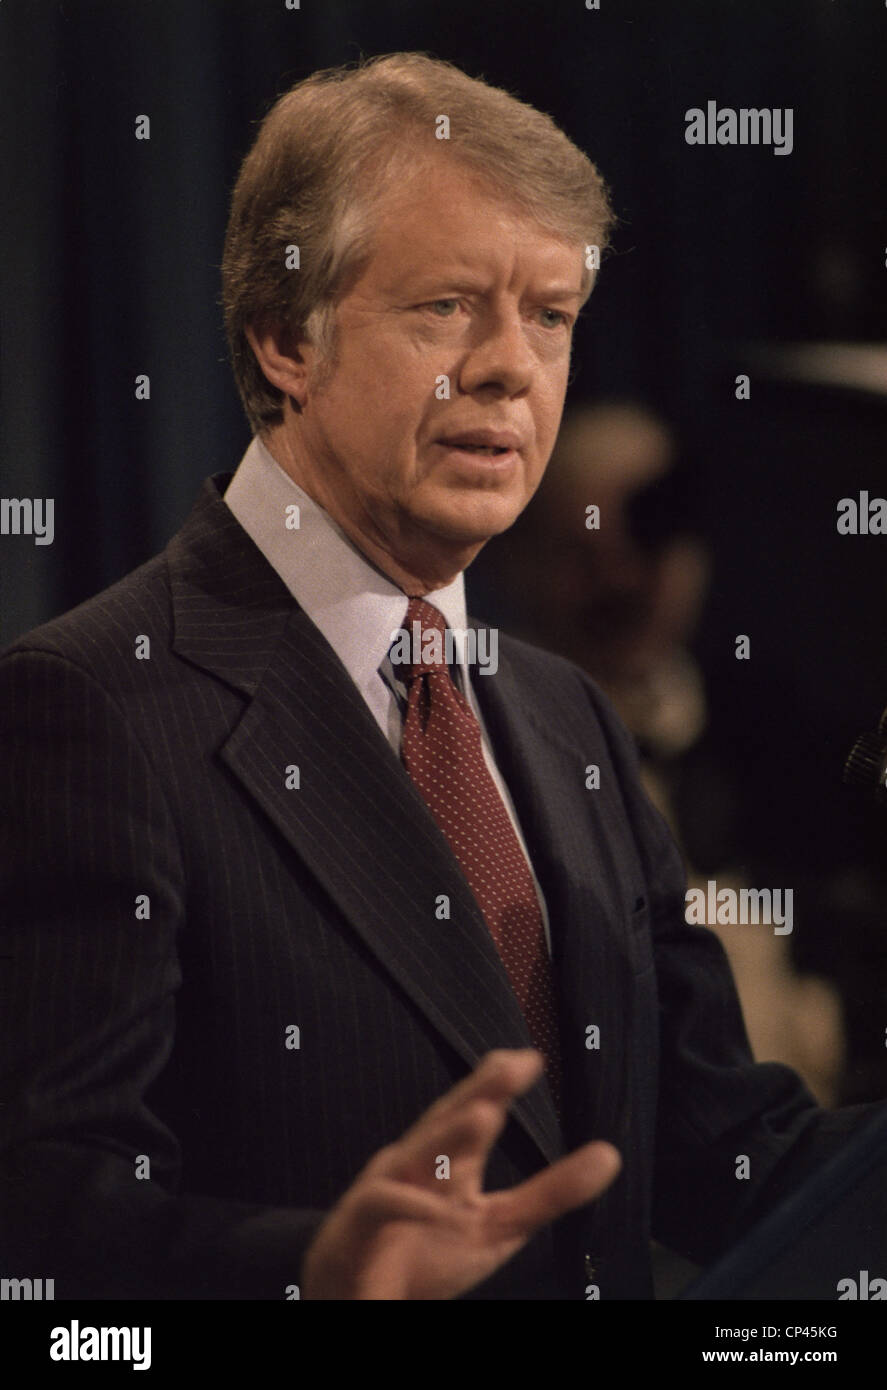 Le président Jimmy Carter s'exprimant lors d'une conférence de presse. Ca. 1977-1980. Banque D'Images